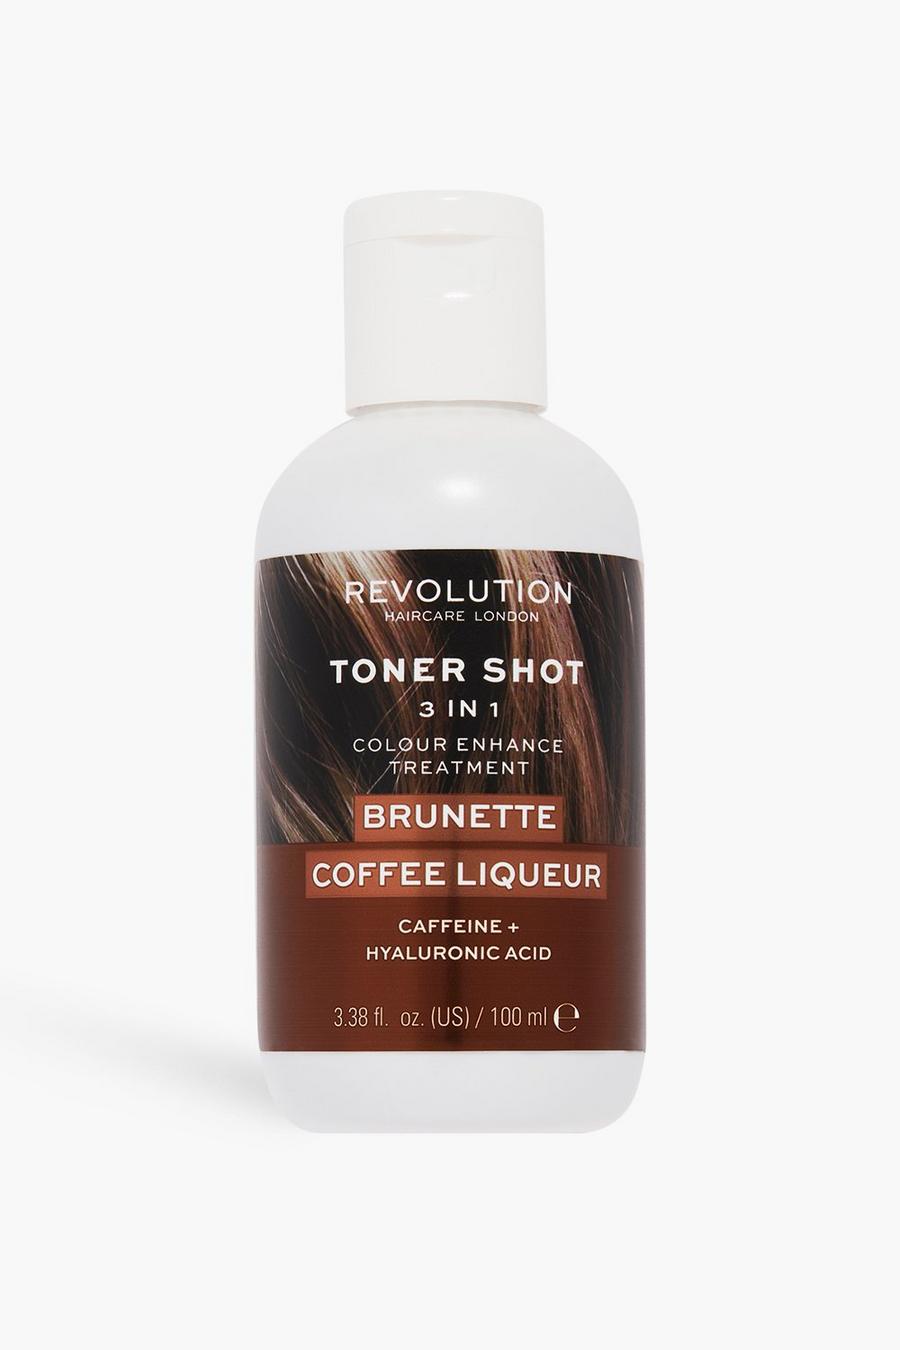 Revolution Hair Toner Shot Brunette Coffee